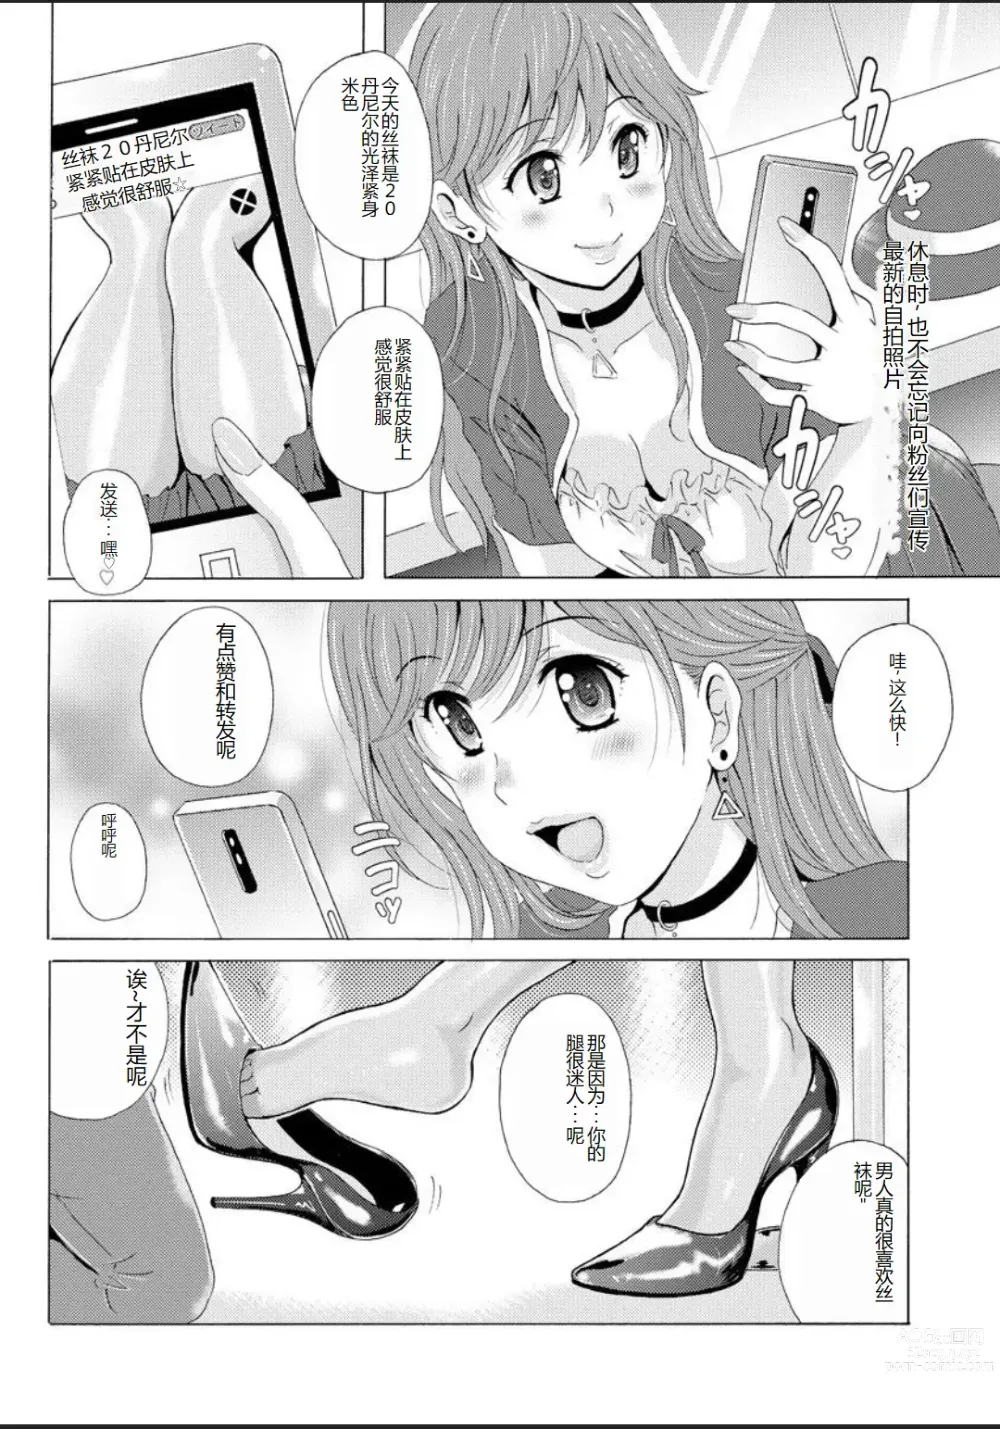 Page 4 of manga Seihuku Bikyaku 5 ～Ibento Konpanion Risa no Mu Re Ta Tizyo Pansuto